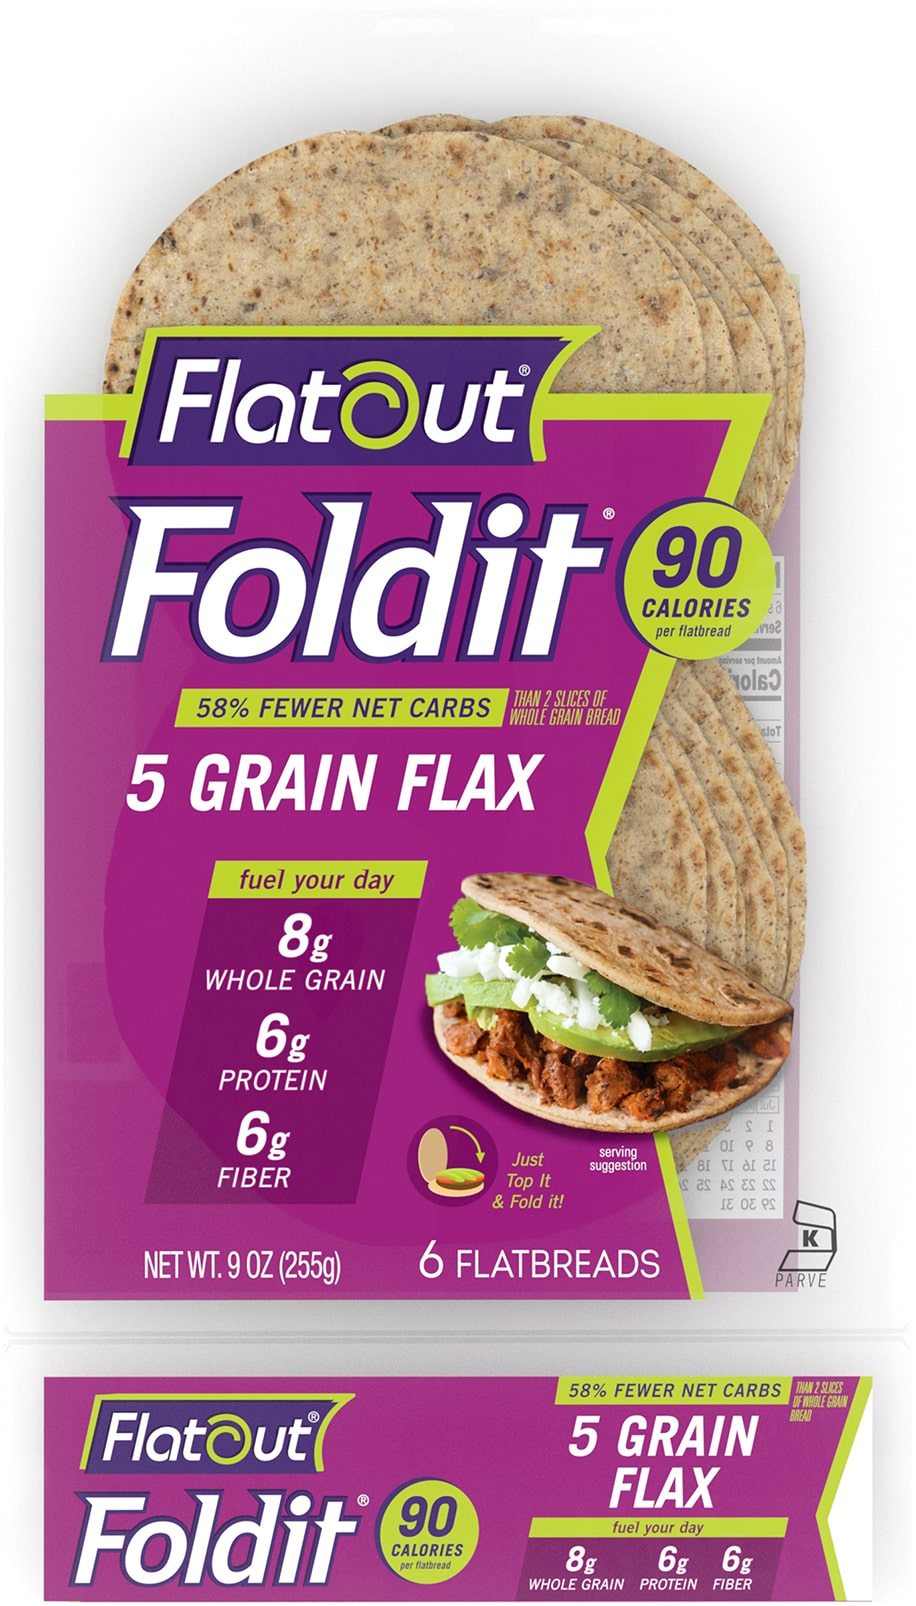 Flatout® Foldit 5 Grain Flax Flatbread